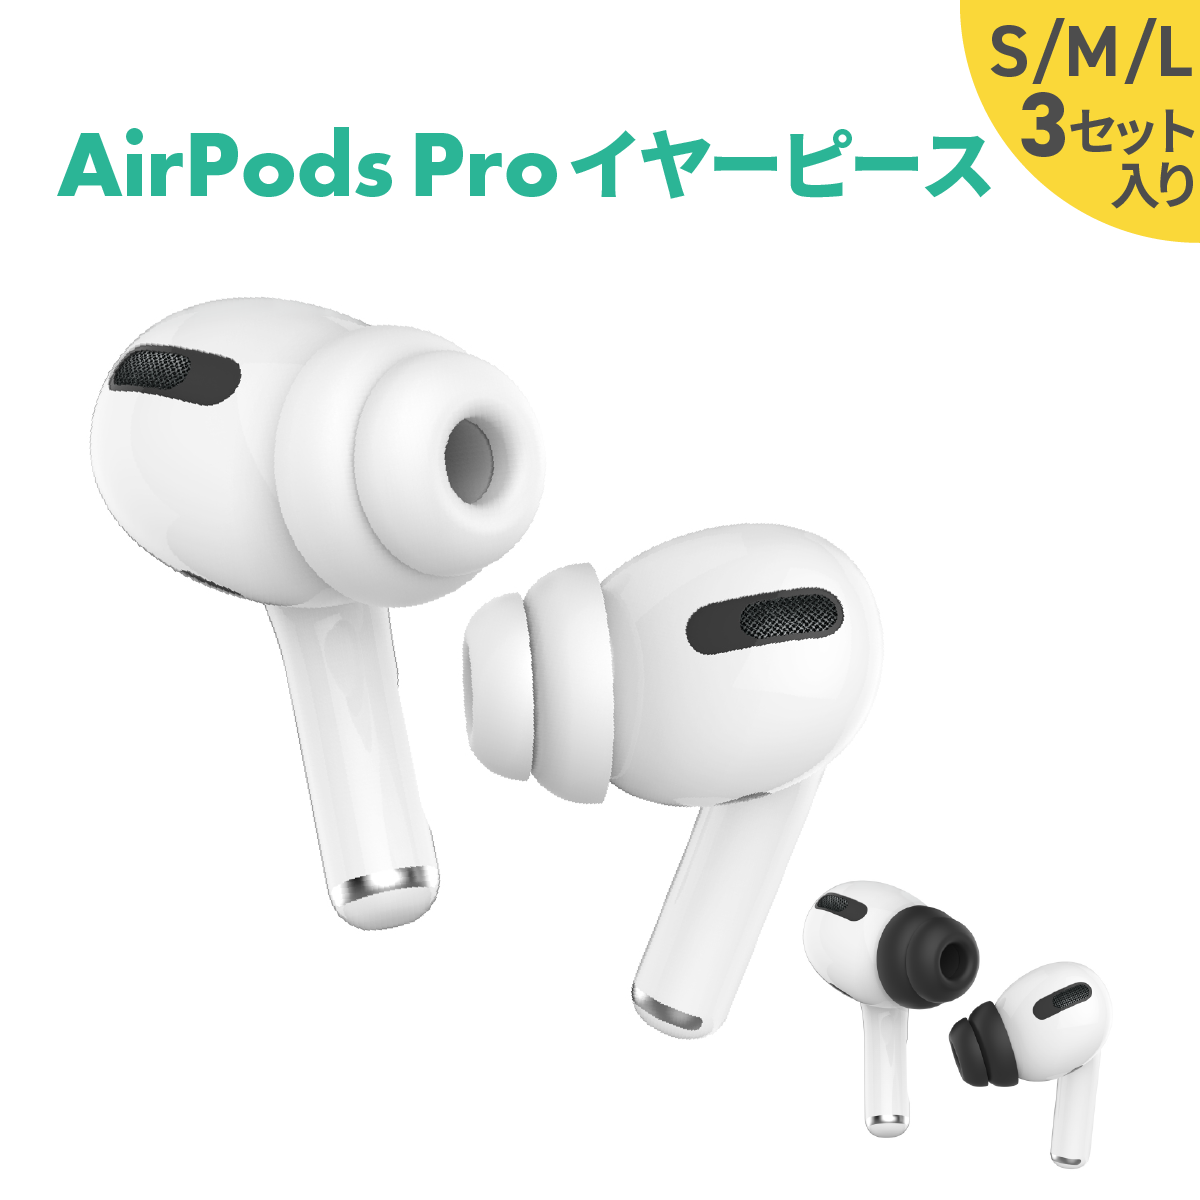 【新品未開封・保証未開始】AirPods Pro 3個セット【国内正規品】